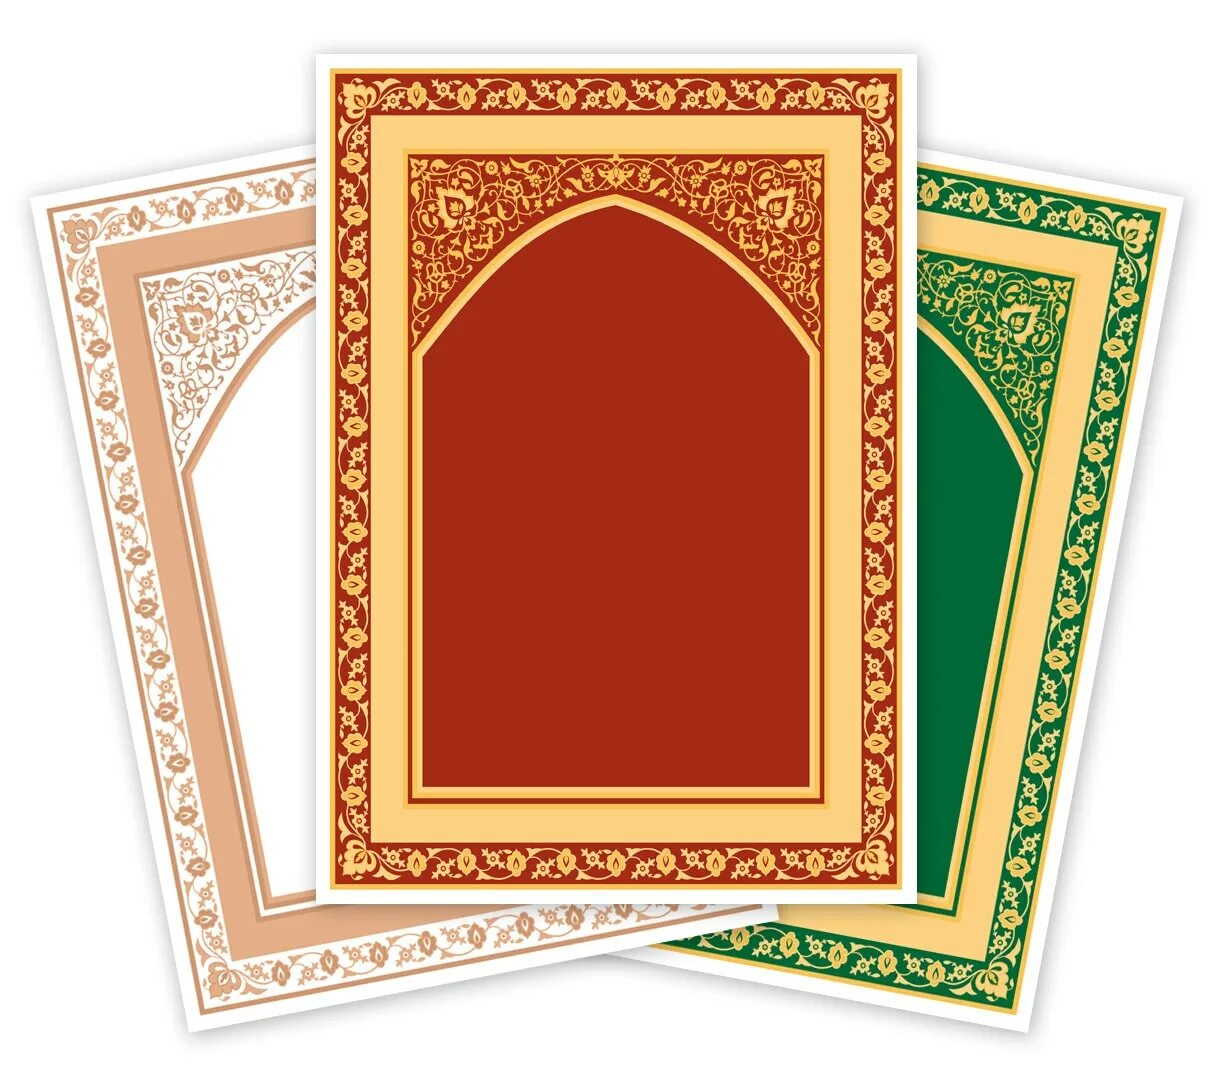 Исламские рамки. Рамка в исламском стиле. Рамки для мусульманки. Мусульманские рамочки векторные.